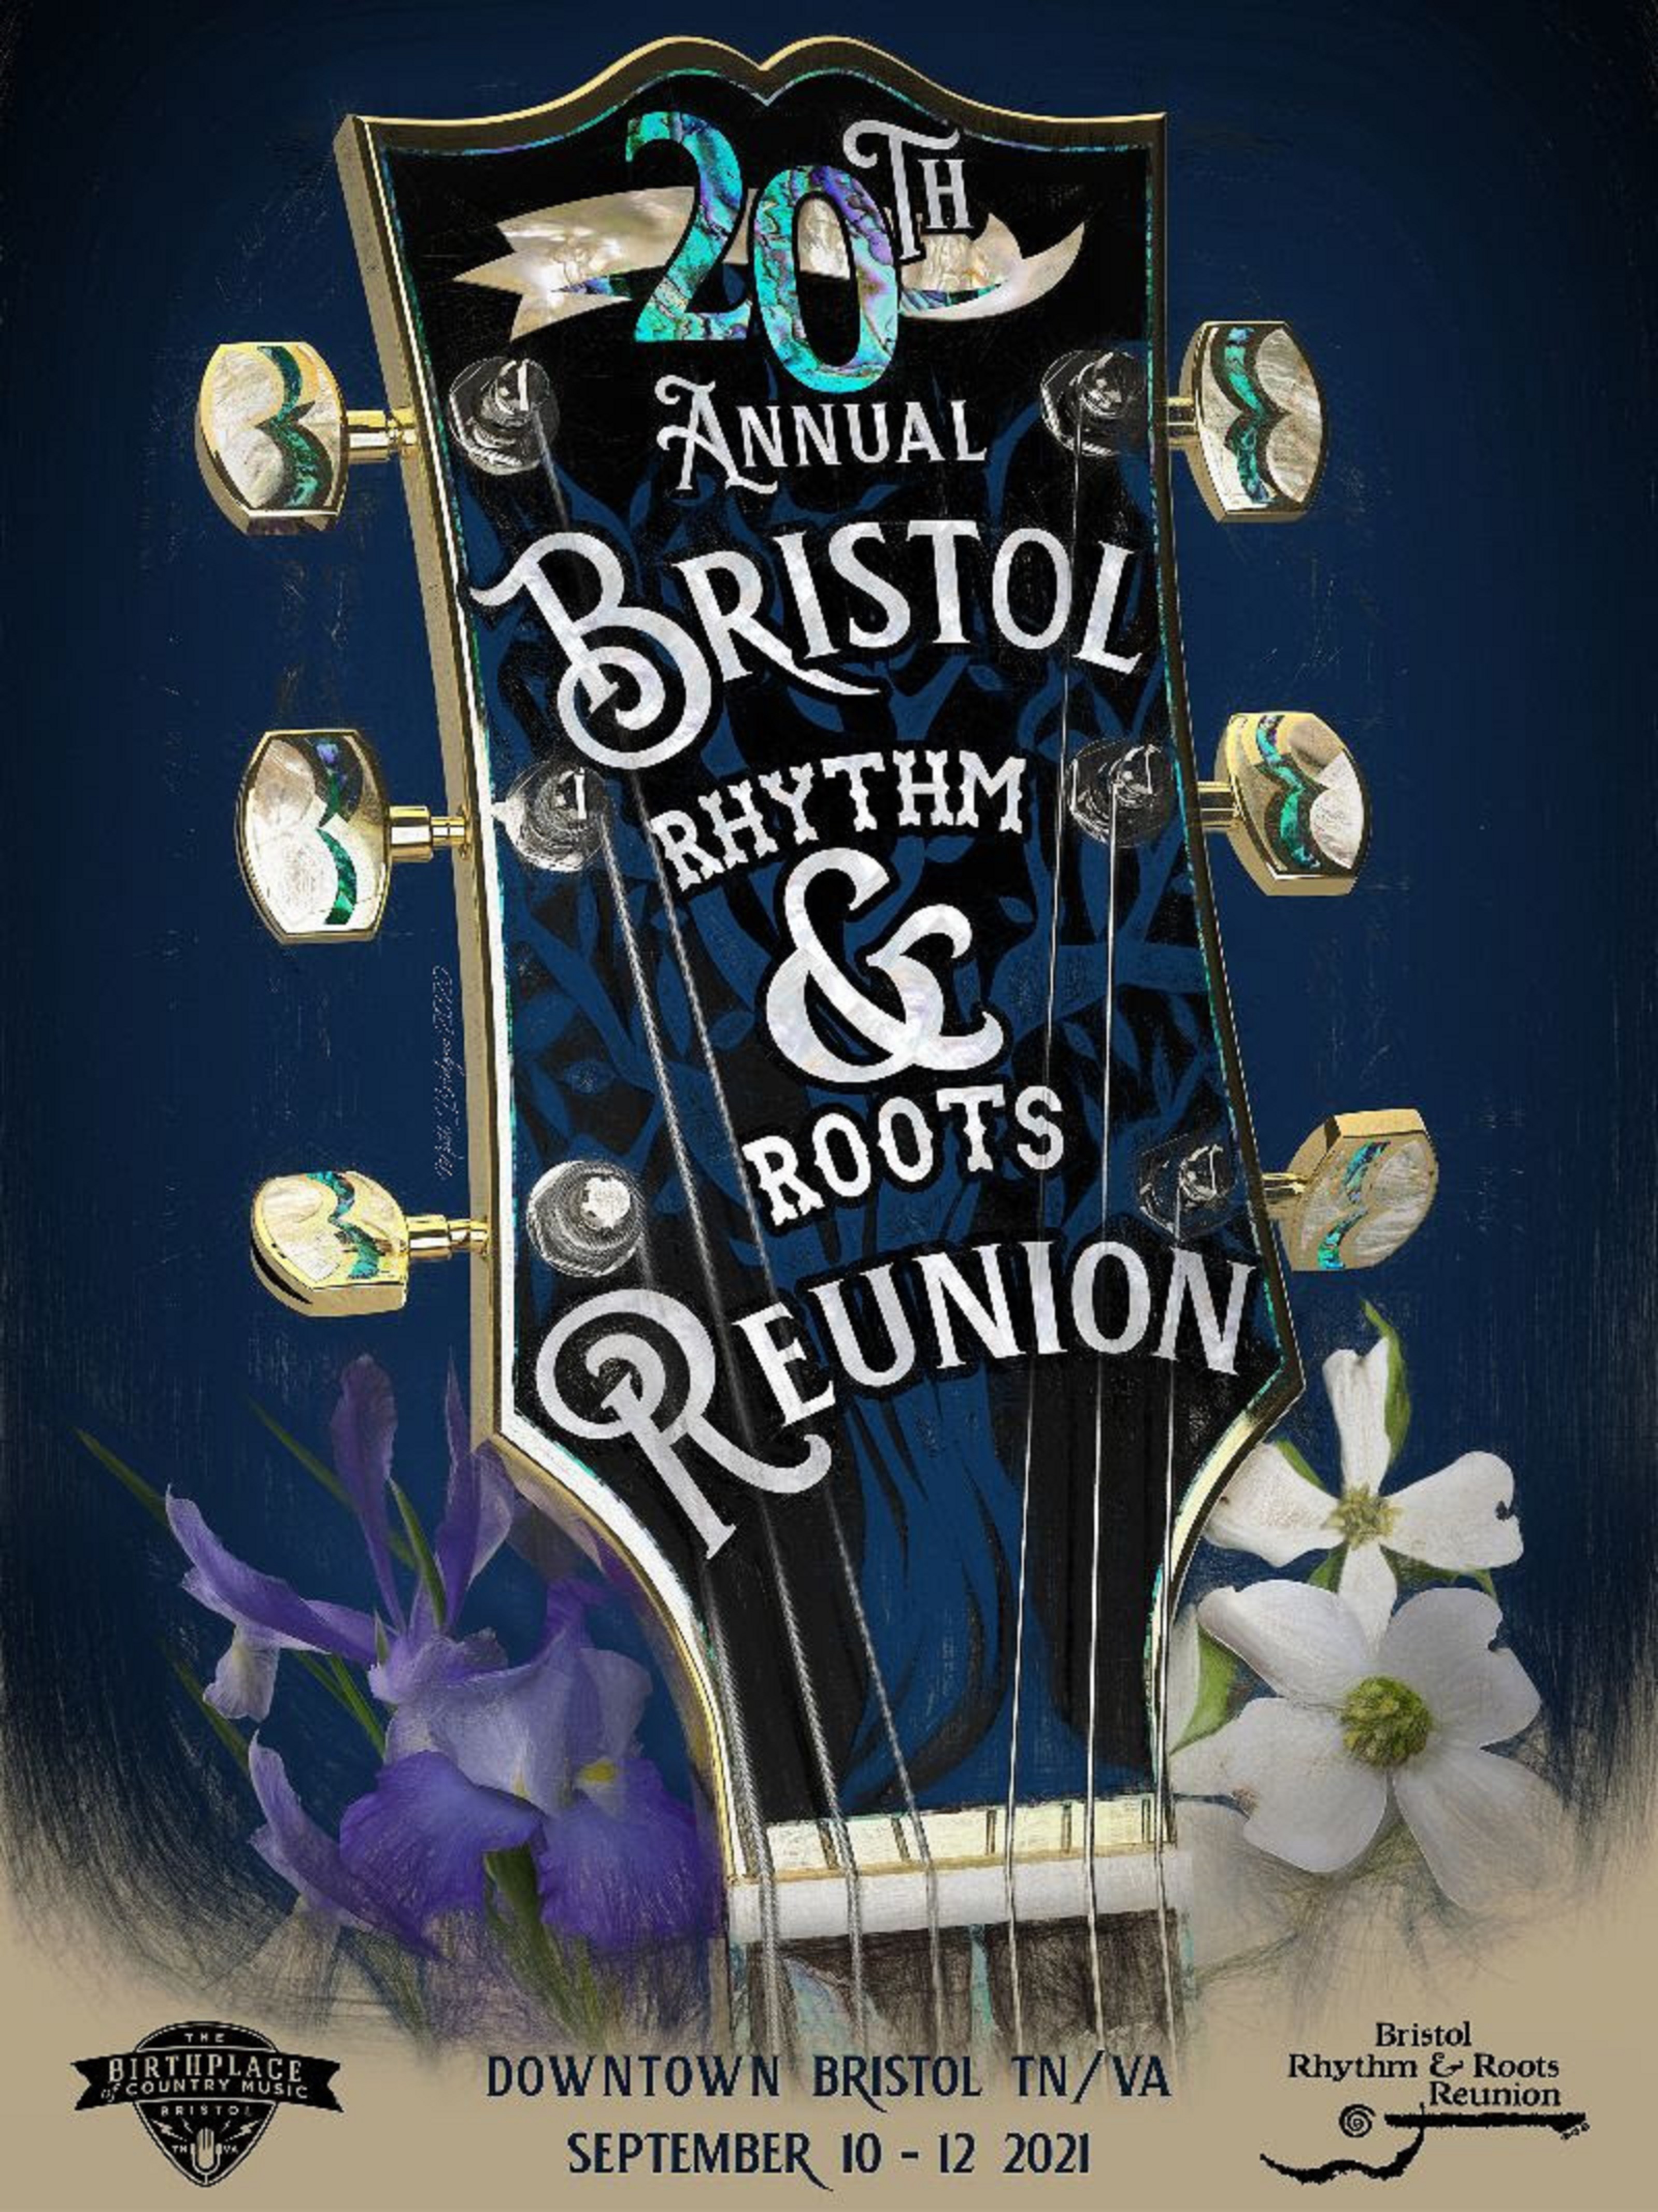 Bristol Rhythm & Roots Reunion 2021 Schedule Announced